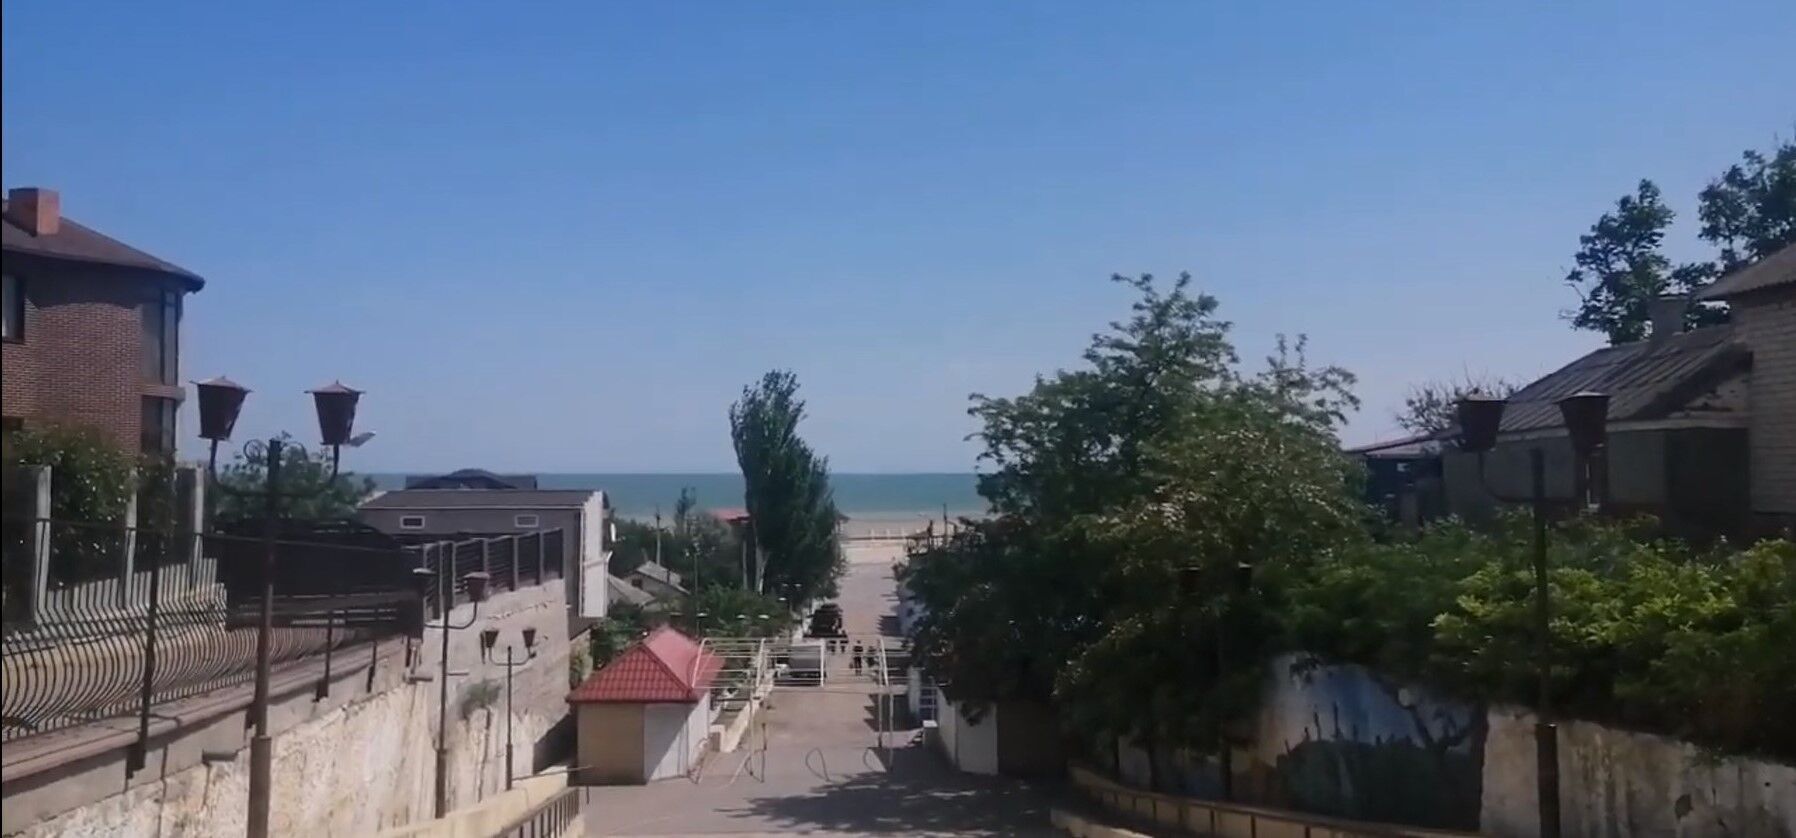 Запустение и разруха: как выглядят в оккупации курорты Кирилловка и Геническ, которые ранее принимали множество туристов. Видео